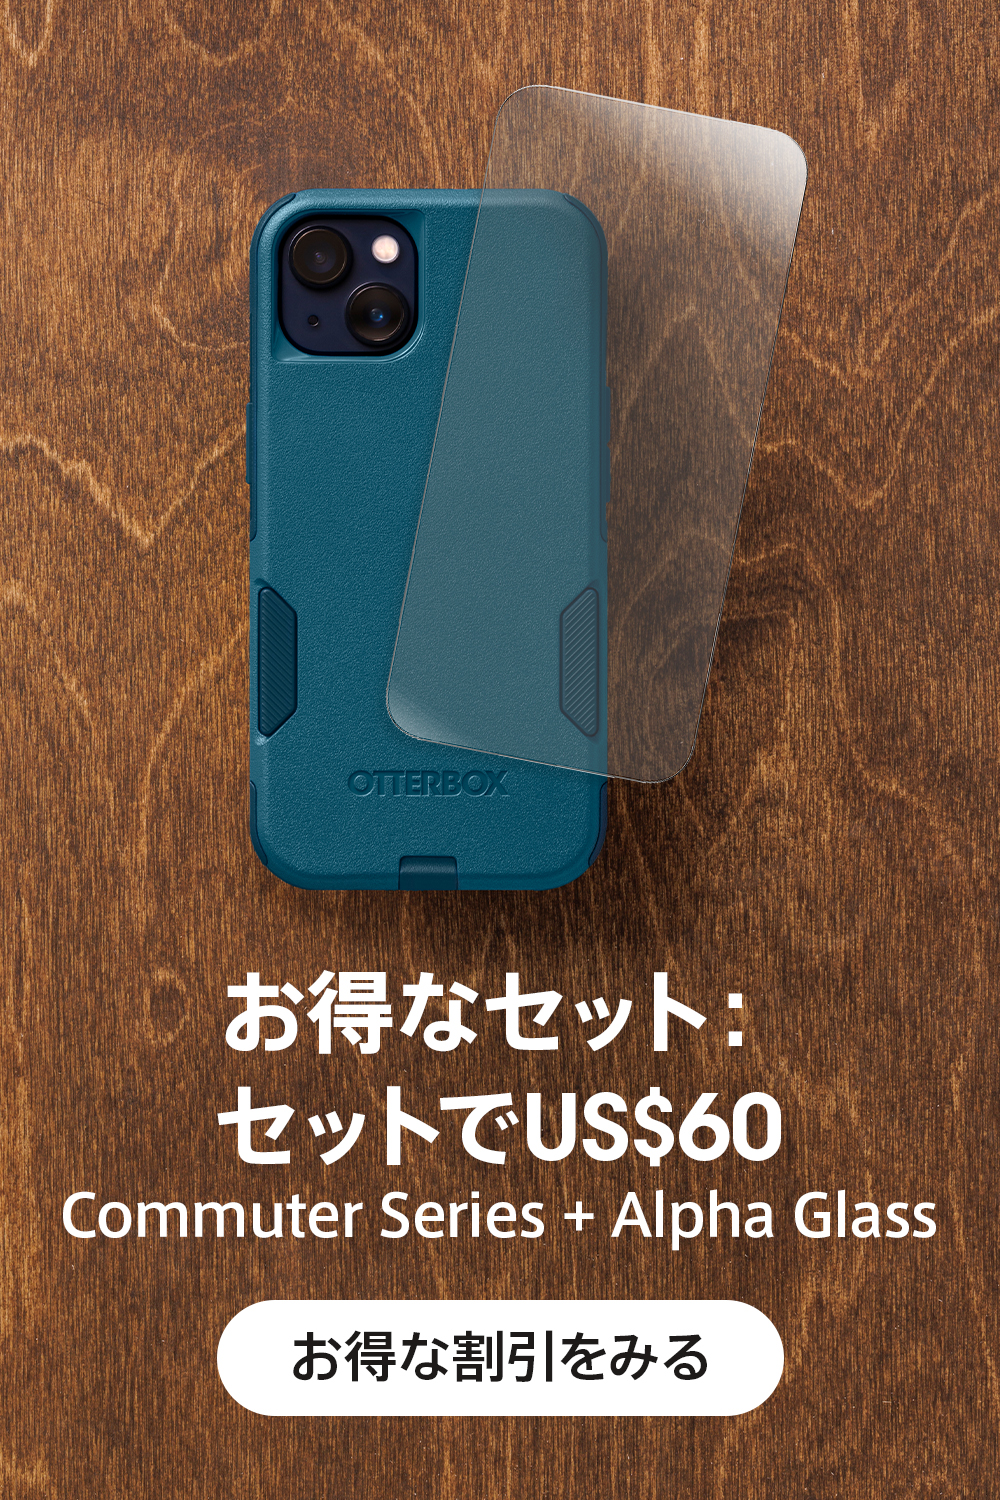 bundle commuter plus alpha glass